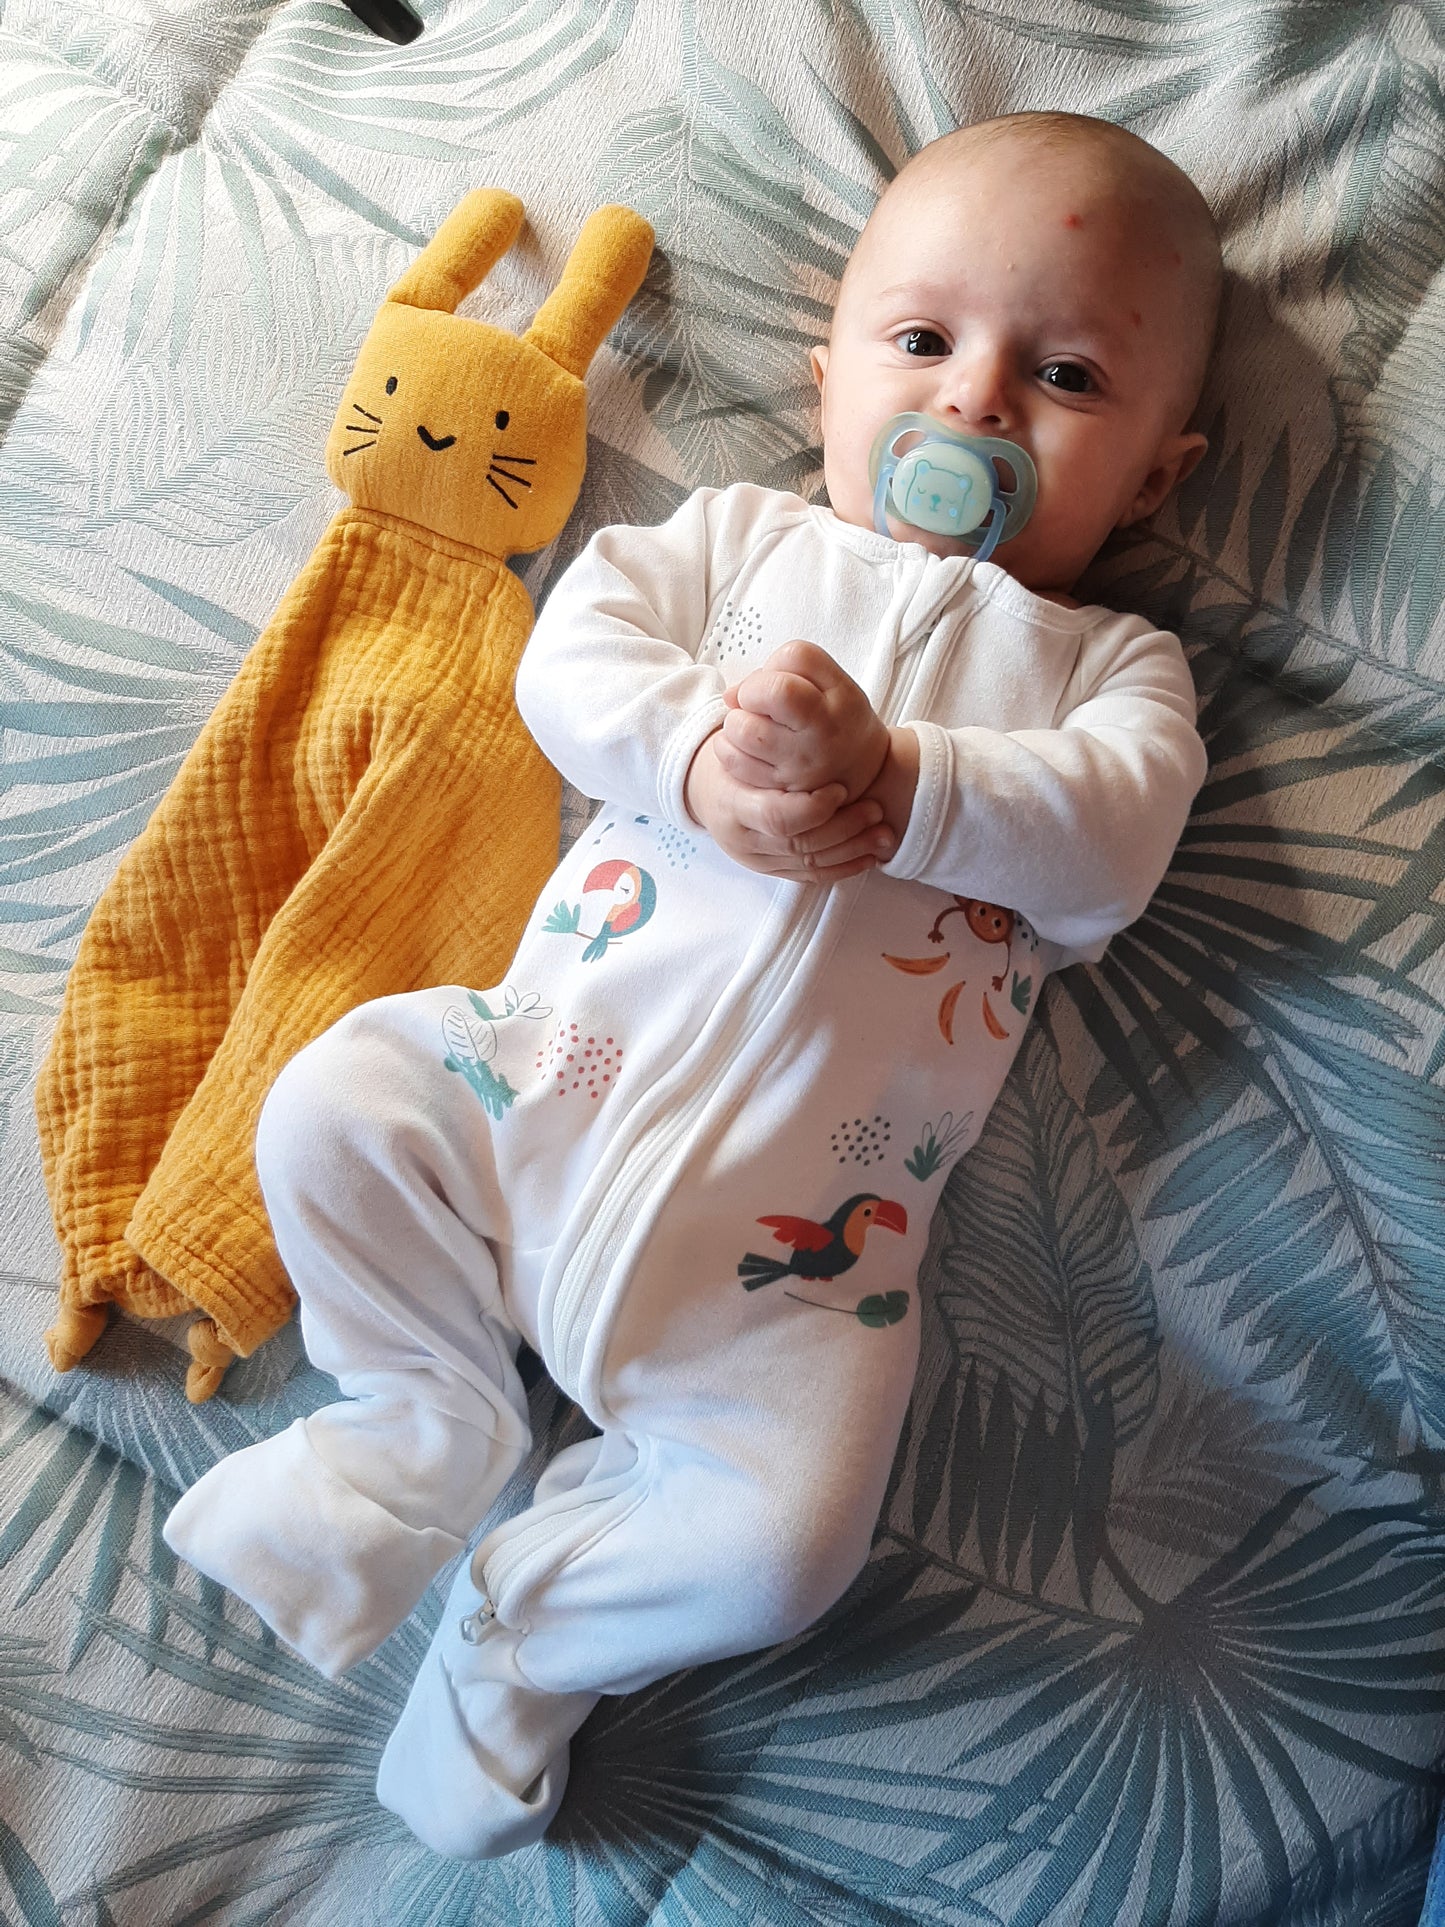 Bébé portant le pyjama "pétillant comme un toucan" de la collection Jungle avec présence de son doudou à côté.